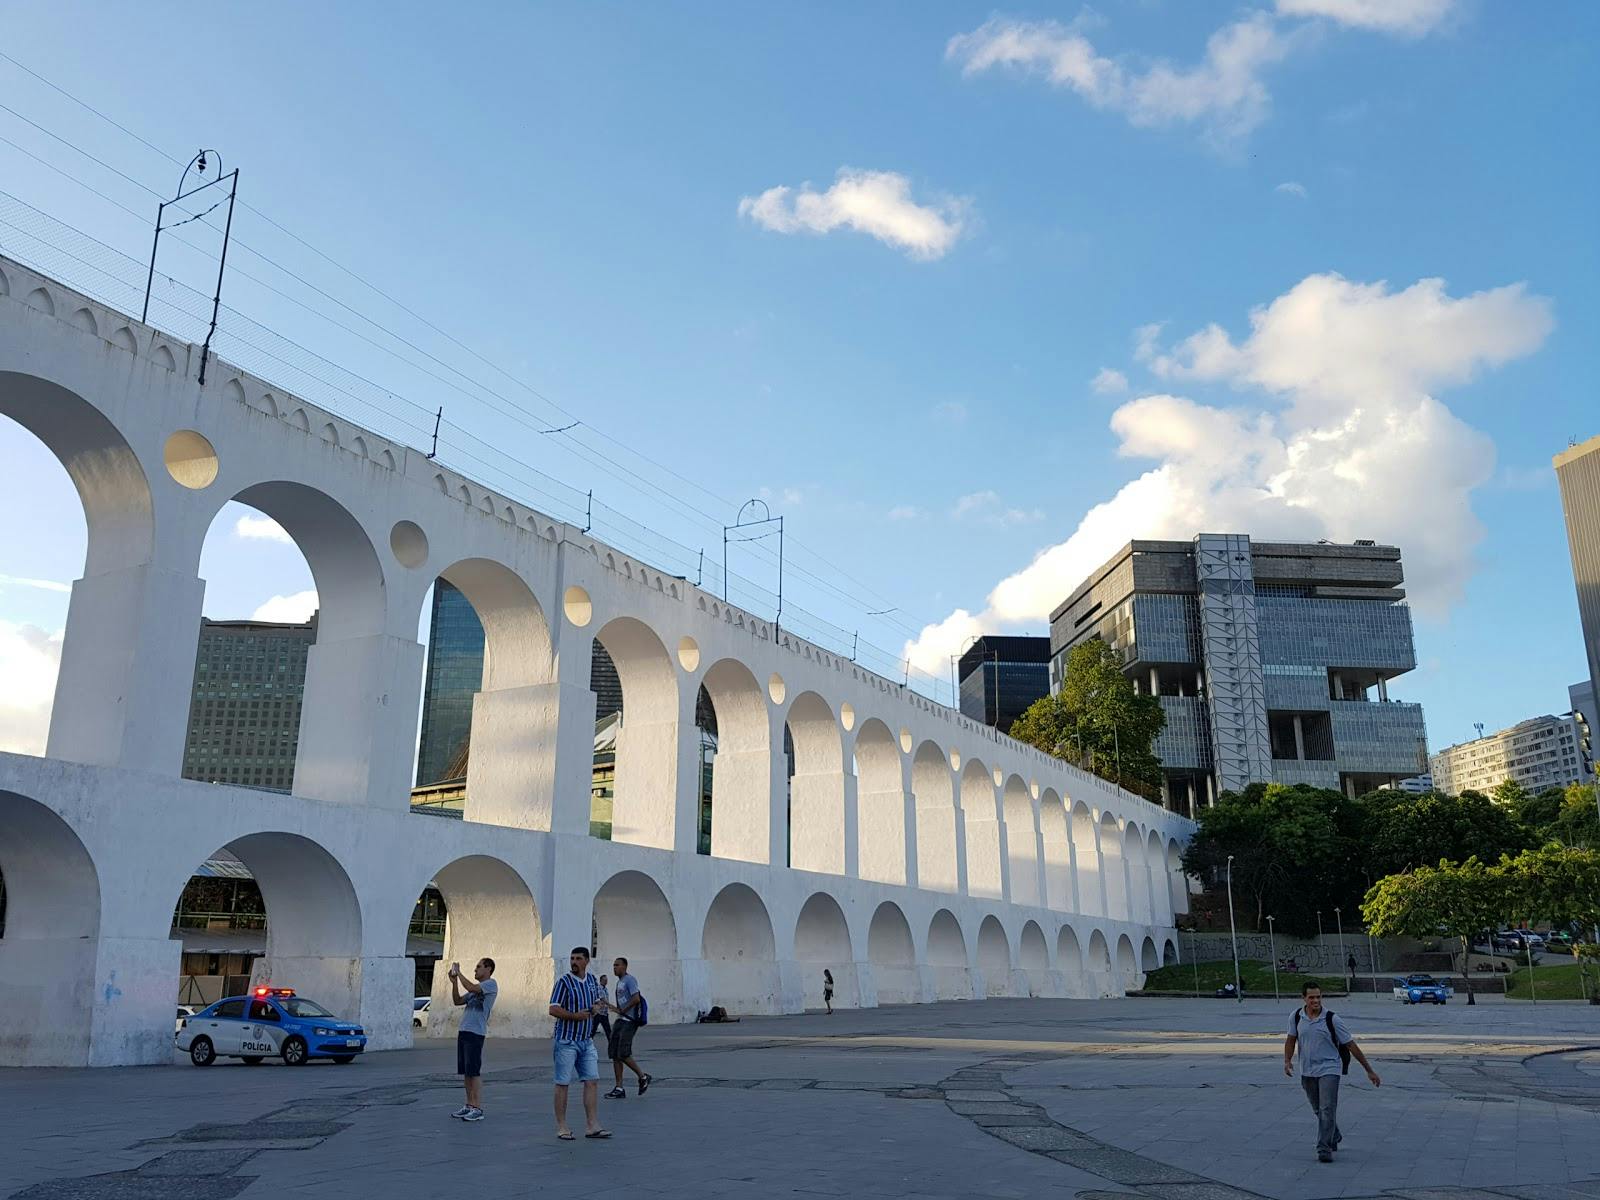 Image - Carioca Aqueduct